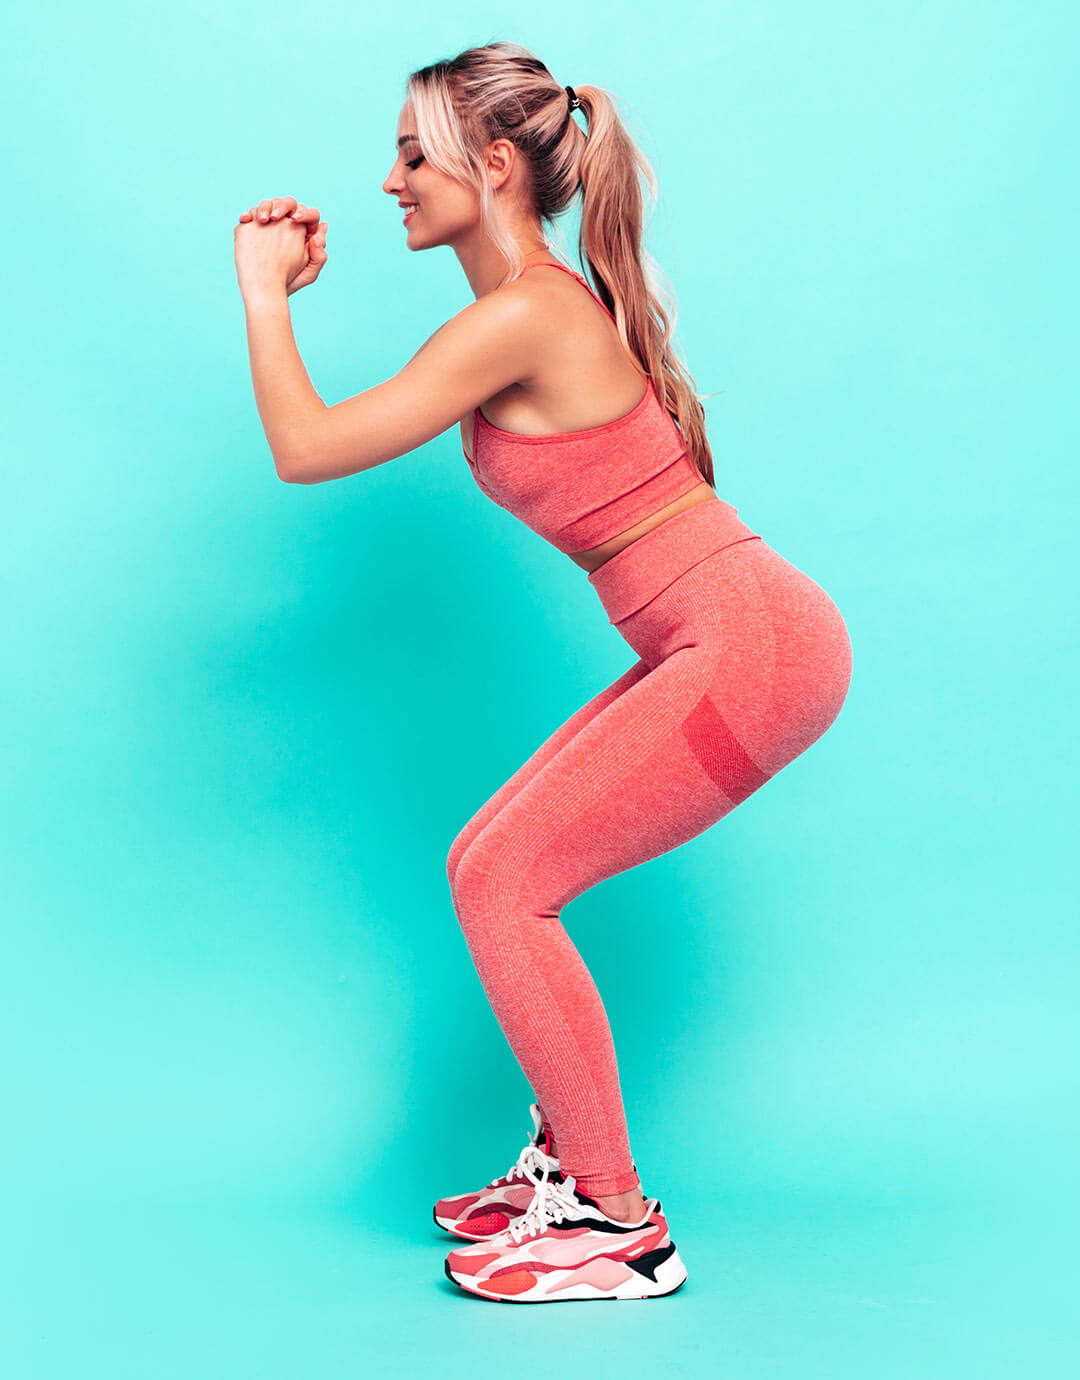 4 ejercicios prácticos y fáciles para fortalecer tu masa muscular